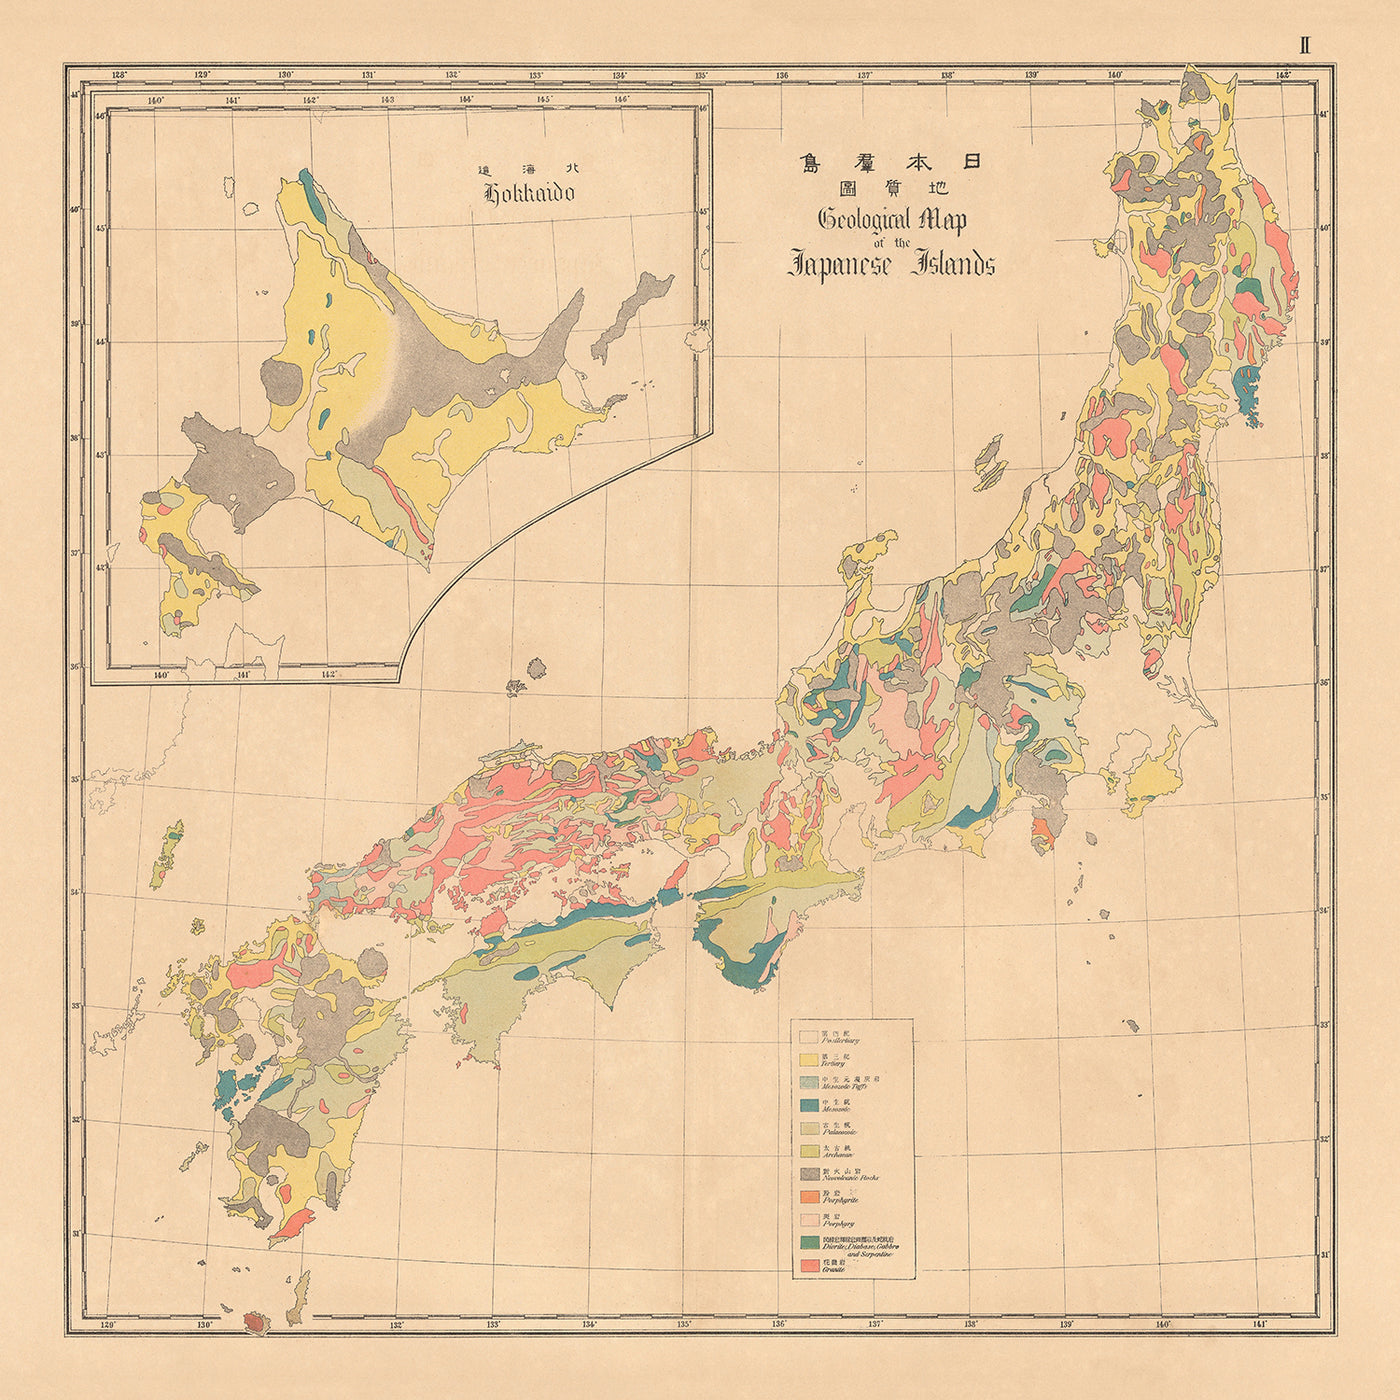 Alte Infografik der japanischen Inseln von Fesca & Harada, 1885: Erste geologische Karte, detaillierte Legende, bahnbrechende Kartografie